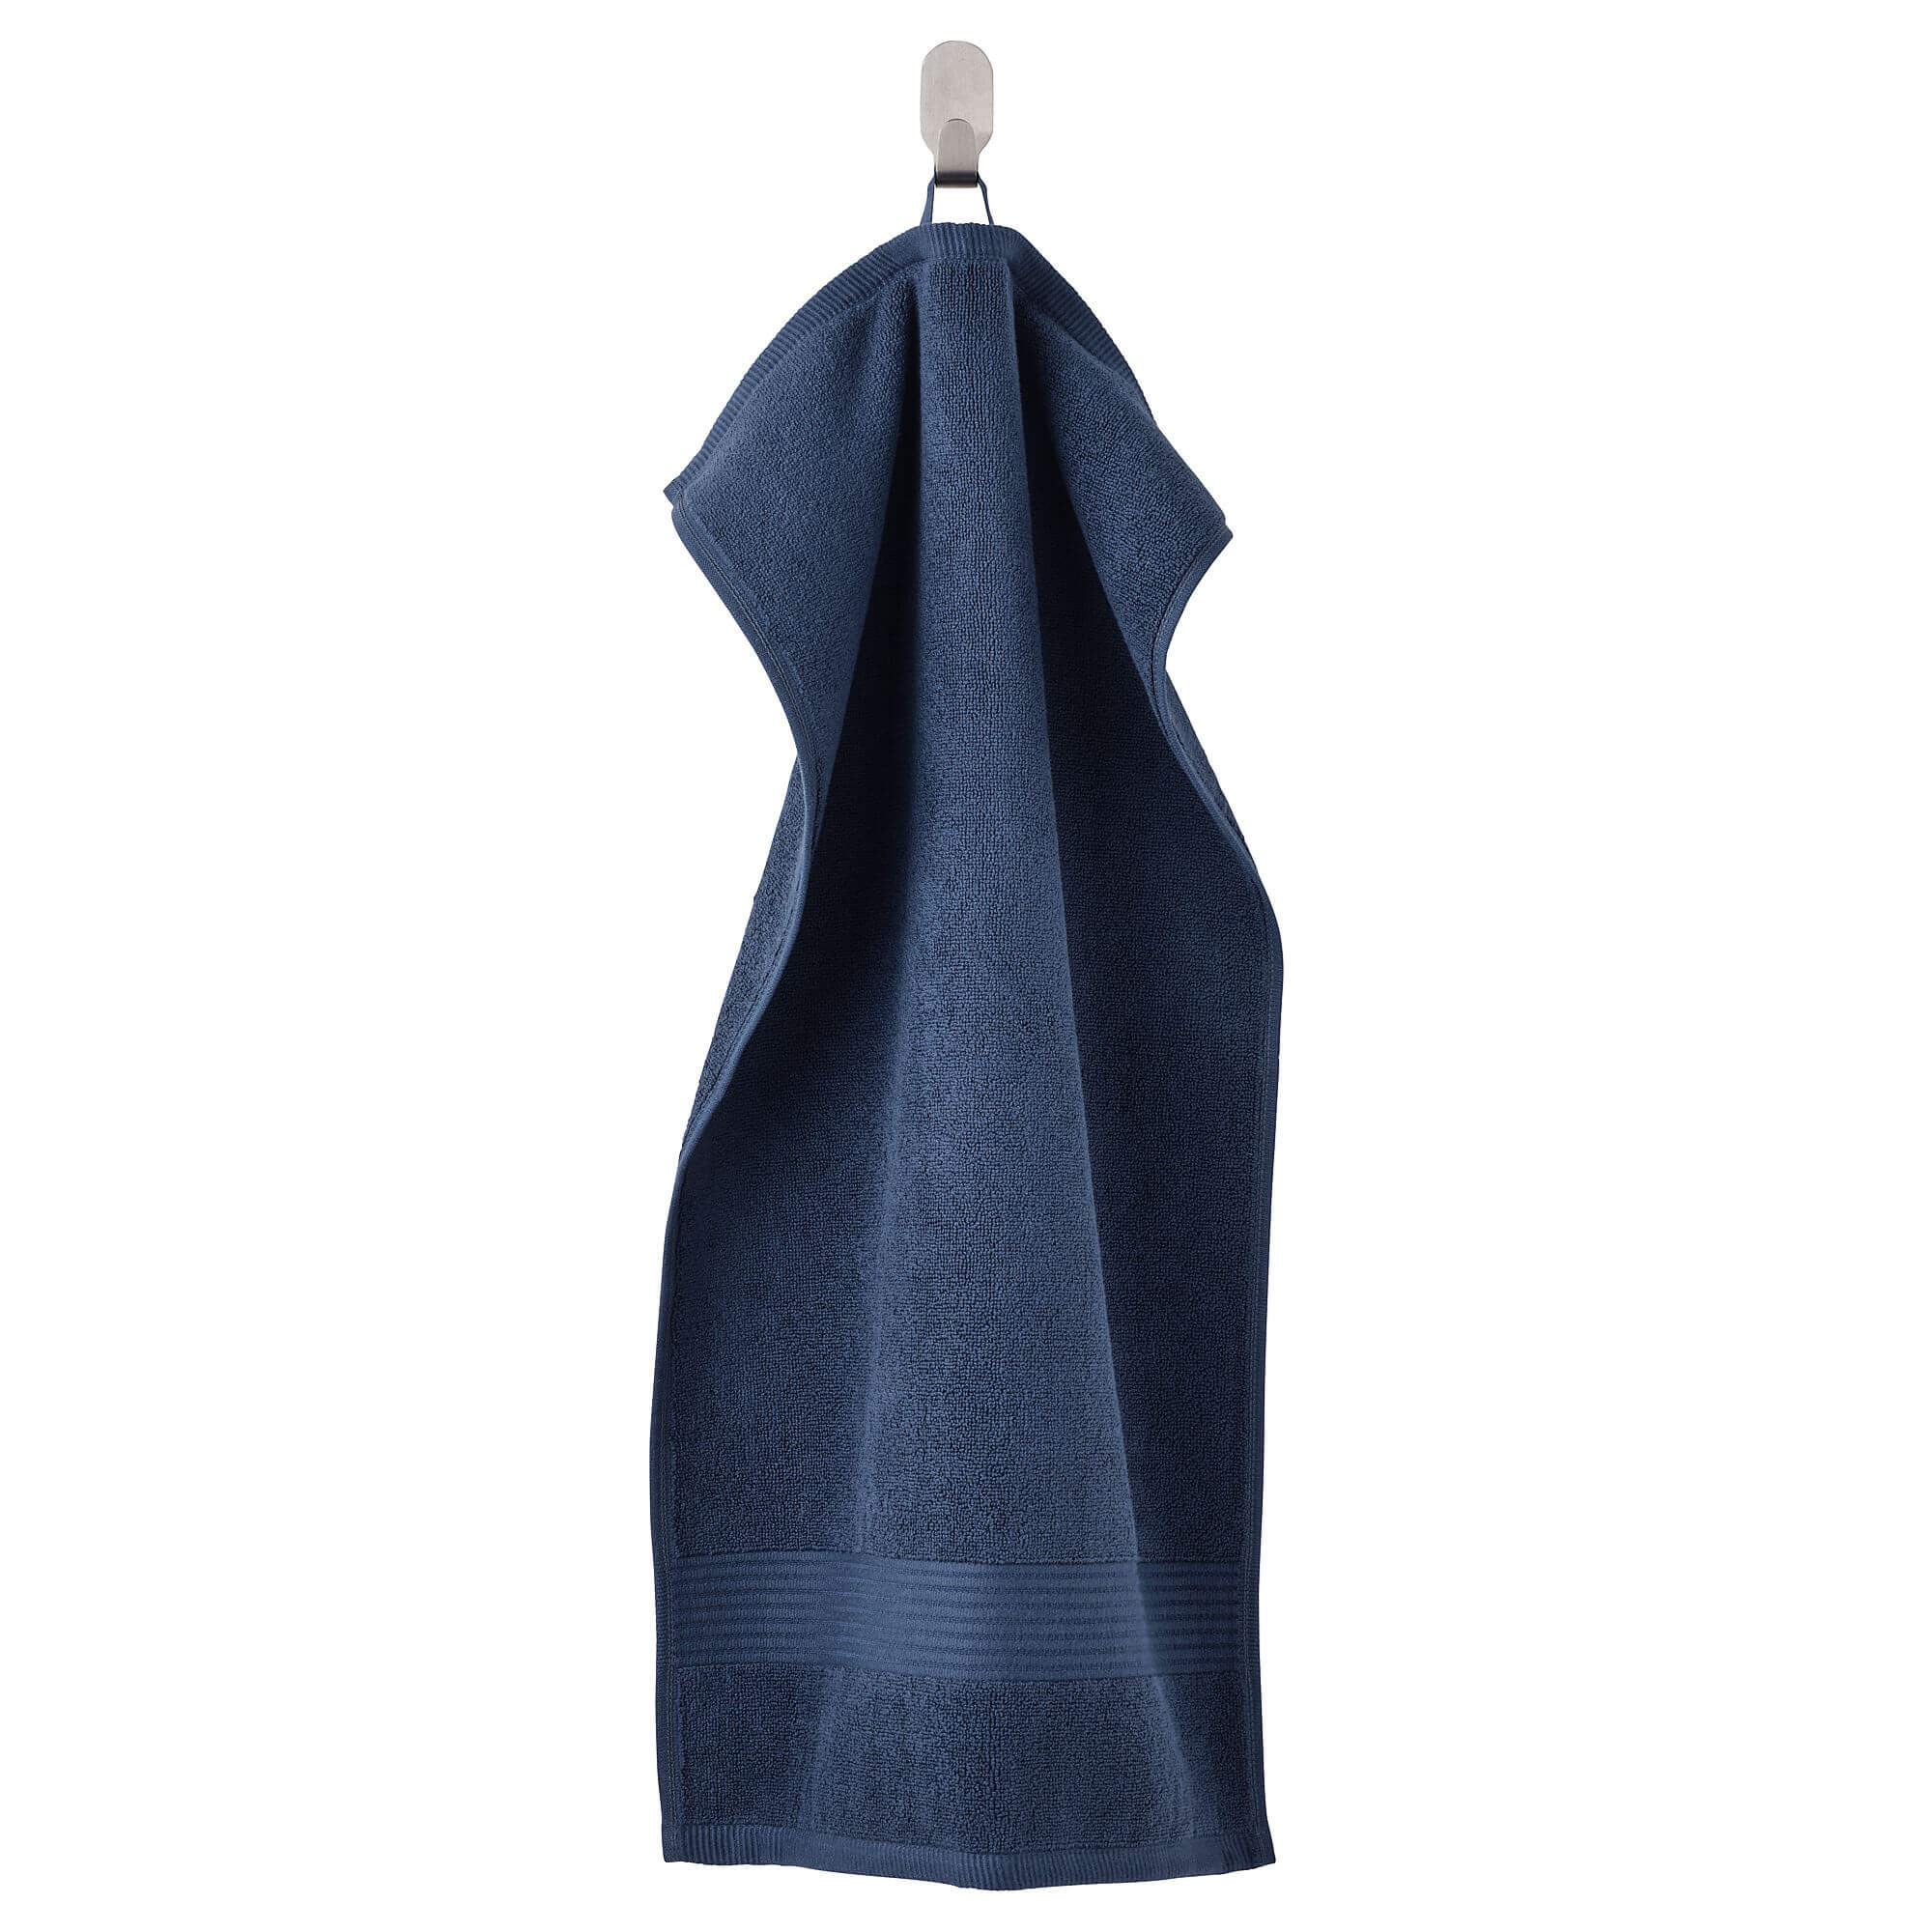 Полотенце для рук IKEA Fredriksjön 40x70 см, темно-синий поглощающее пот полотенце для спортзала 25 110 см удлиненное толстое быстросохнущее мягкое впитывающее пот полотенце для бега с двенадцатью